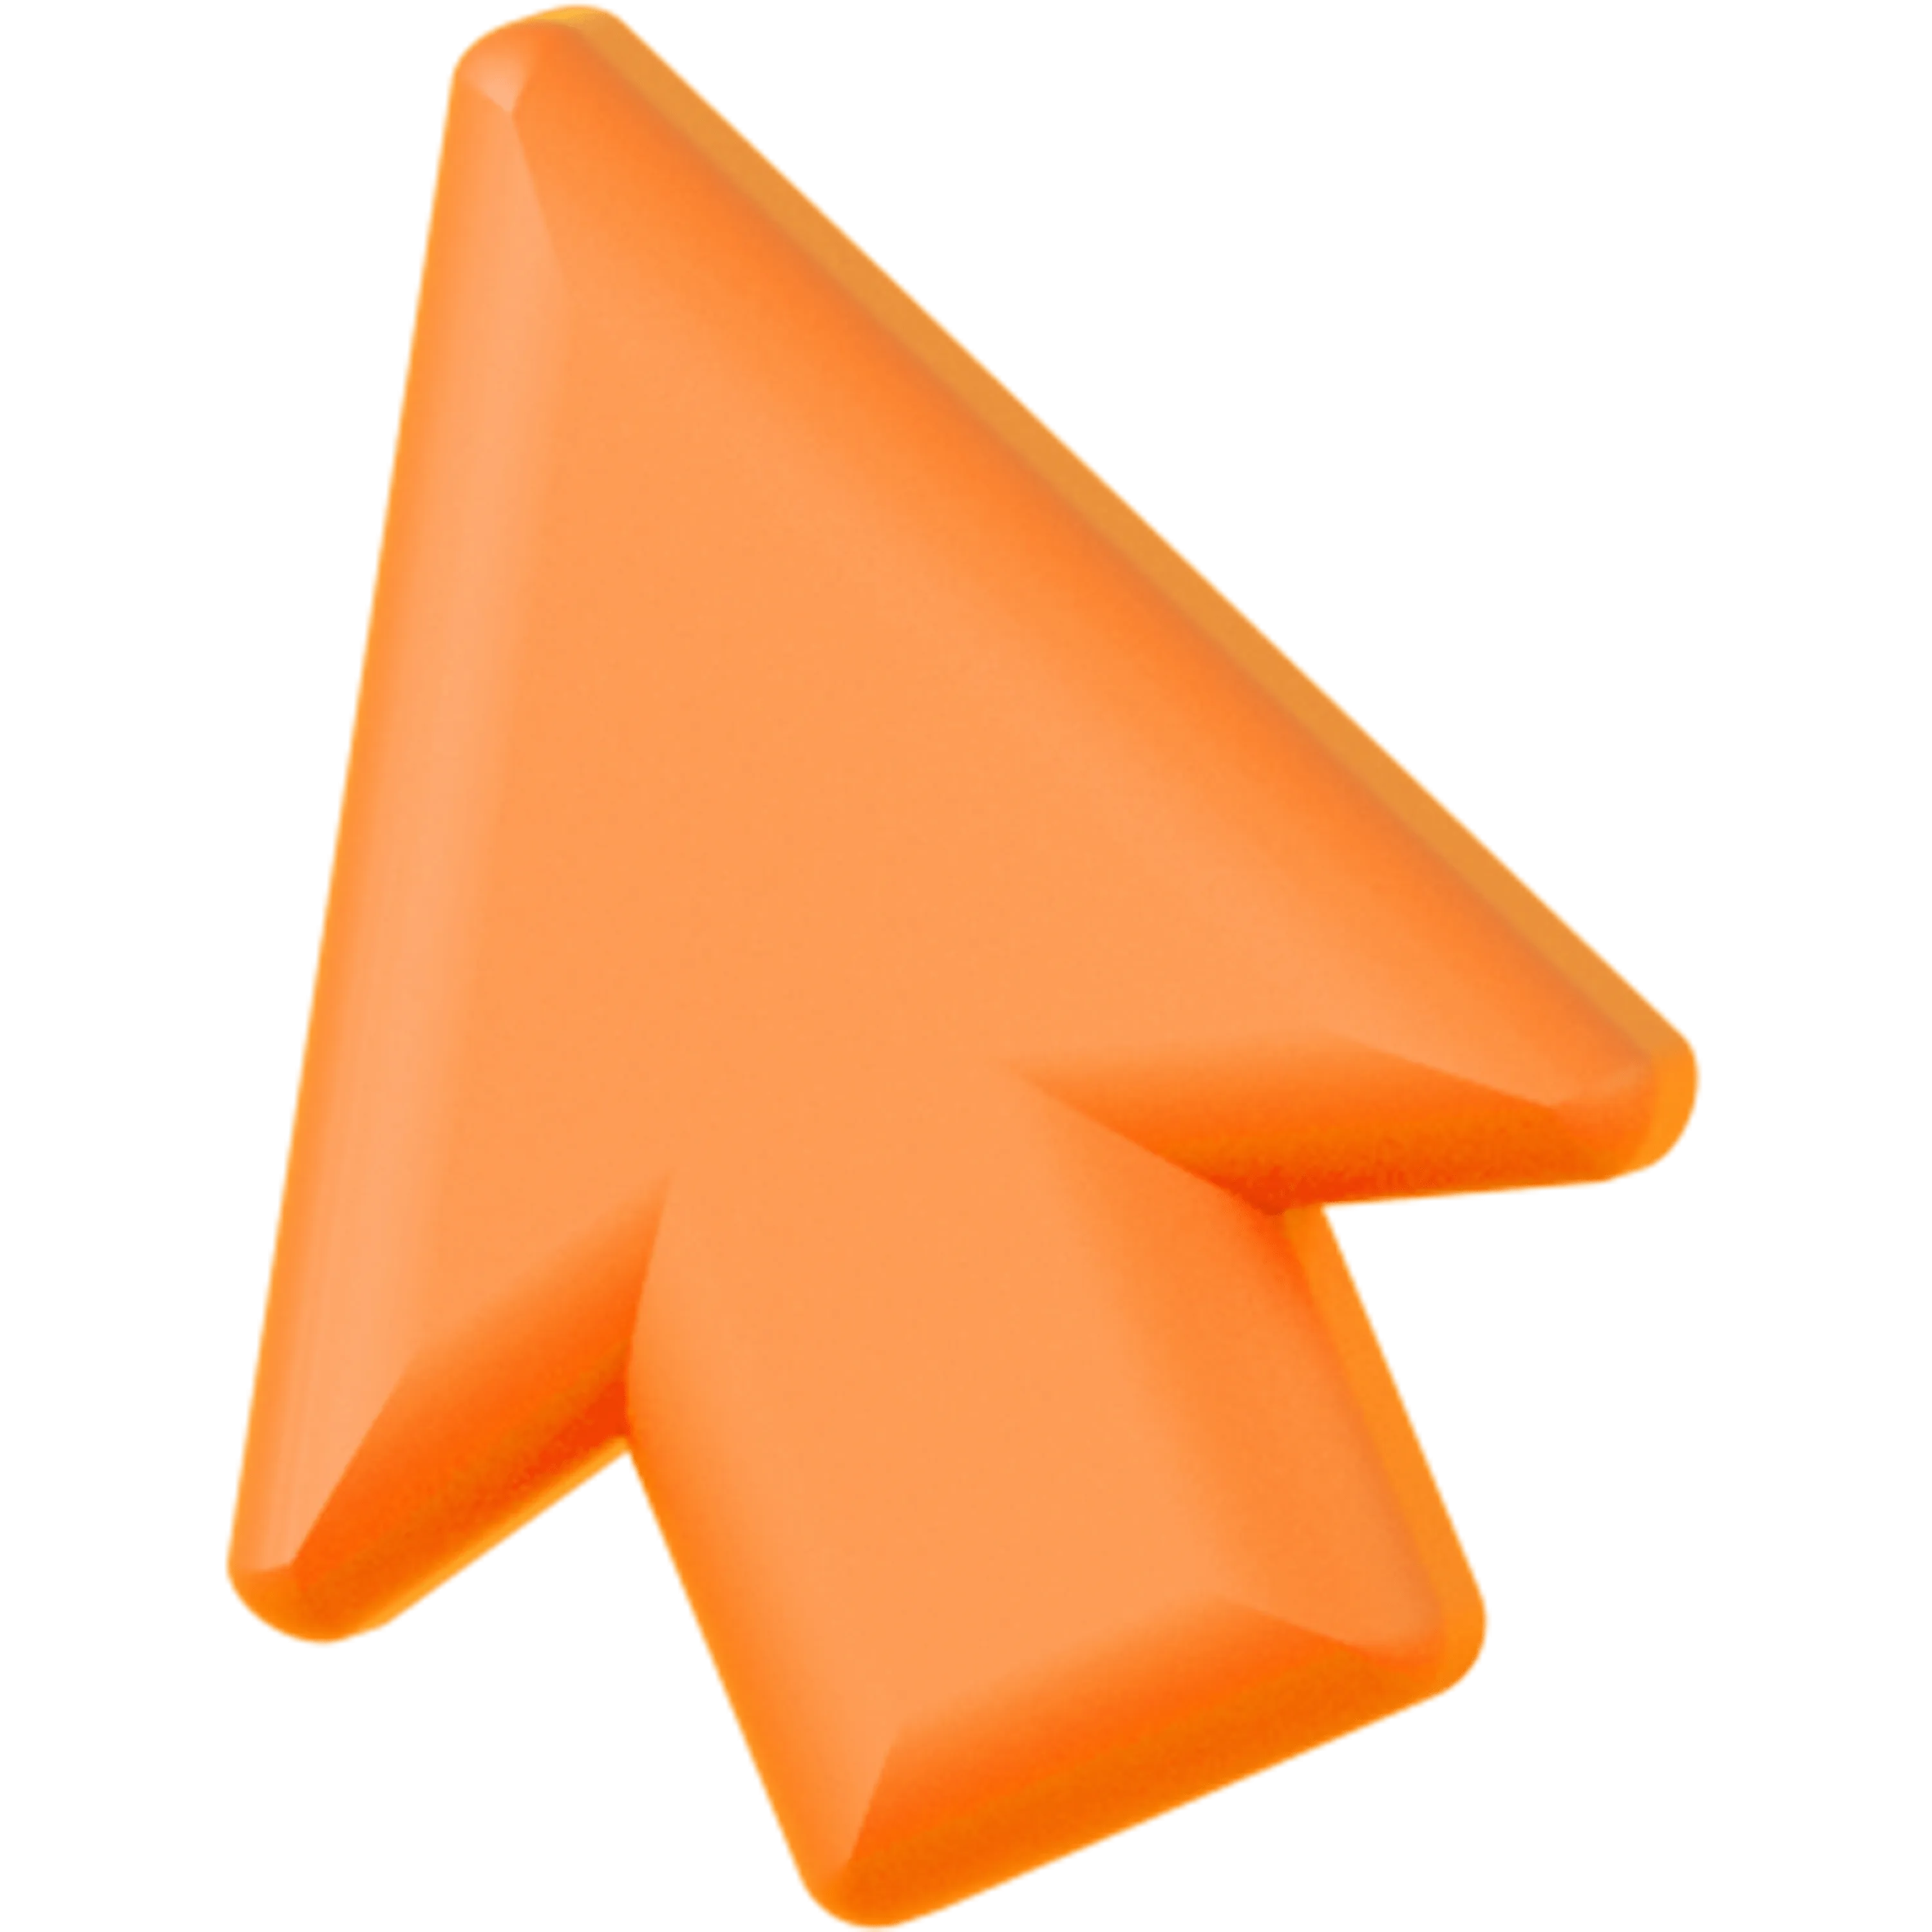 A 3D orange-red cursor icon.